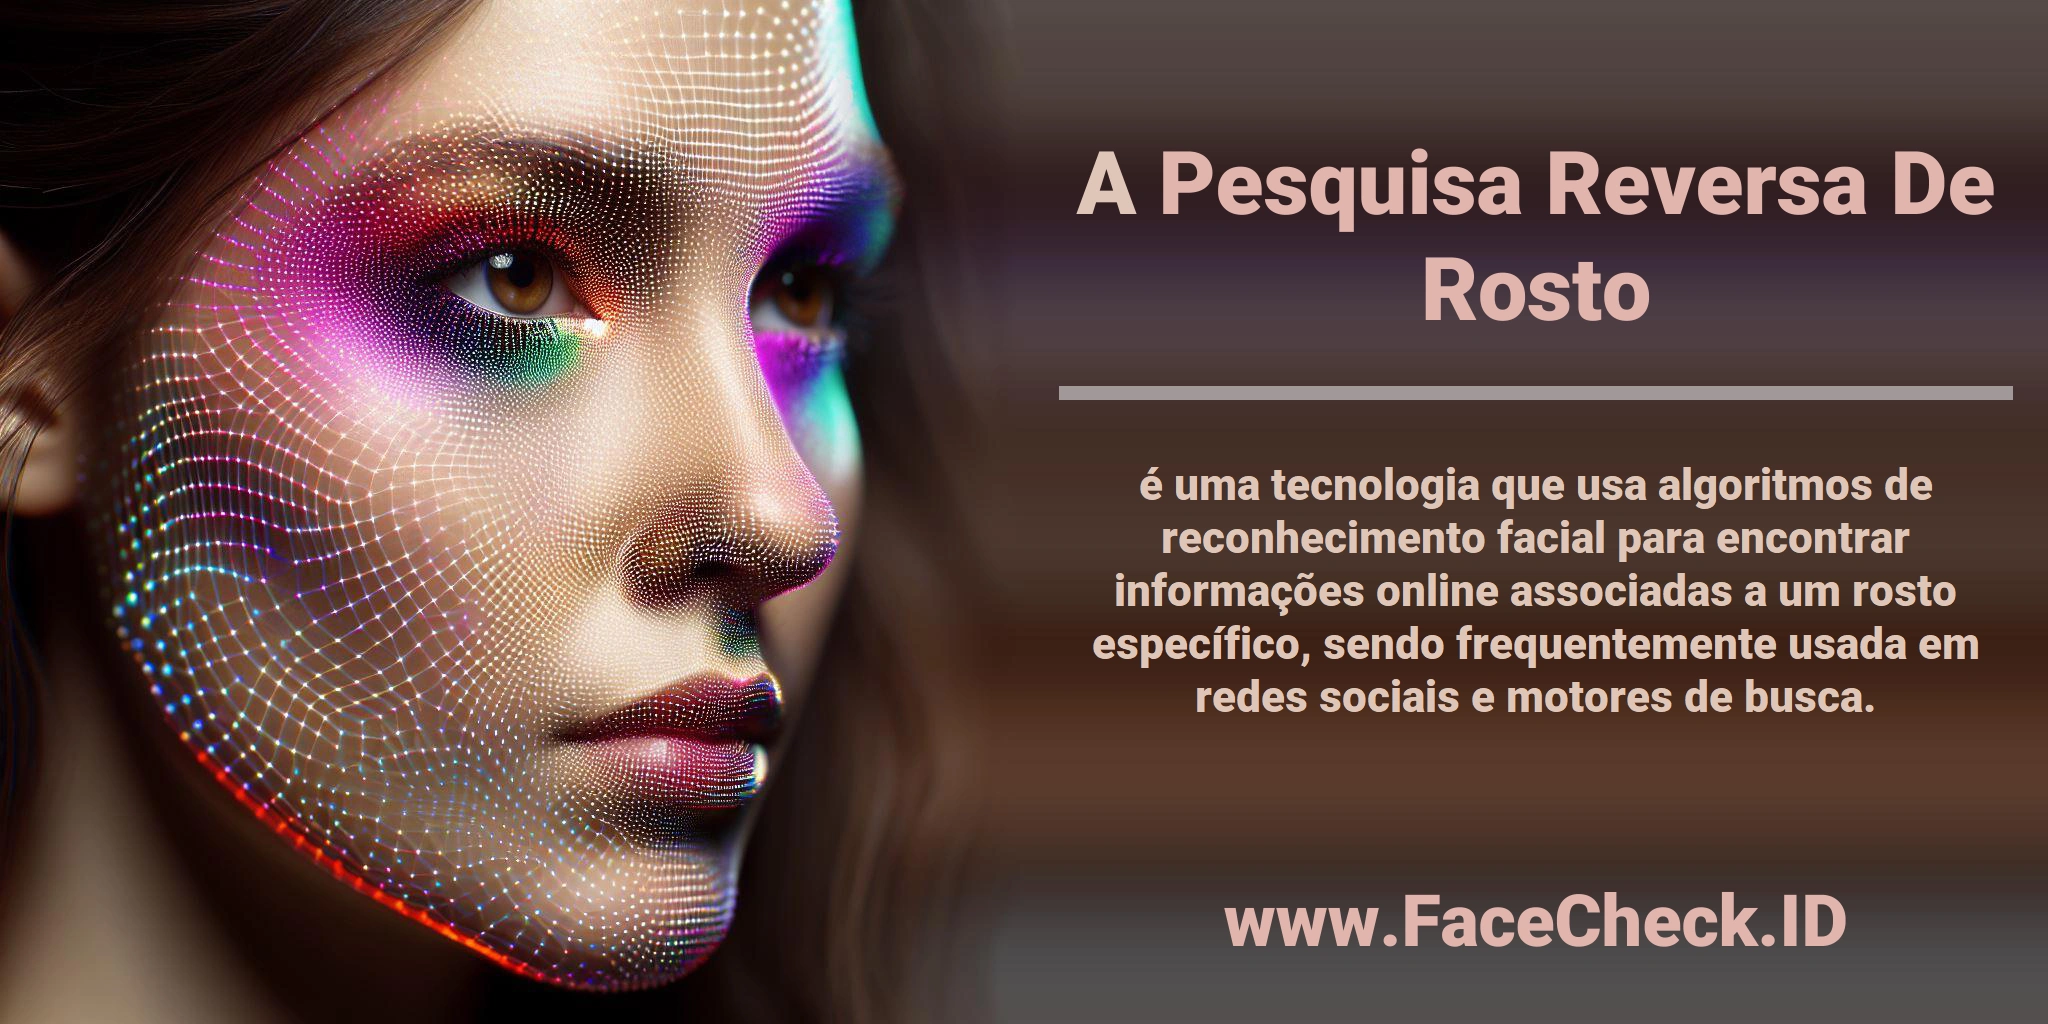 A <b>Pesquisa Reversa De Rosto</b> é uma tecnologia que usa algoritmos de reconhecimento facial para encontrar informações online associadas a um rosto específico, sendo frequentemente usada em redes sociais e motores de busca.